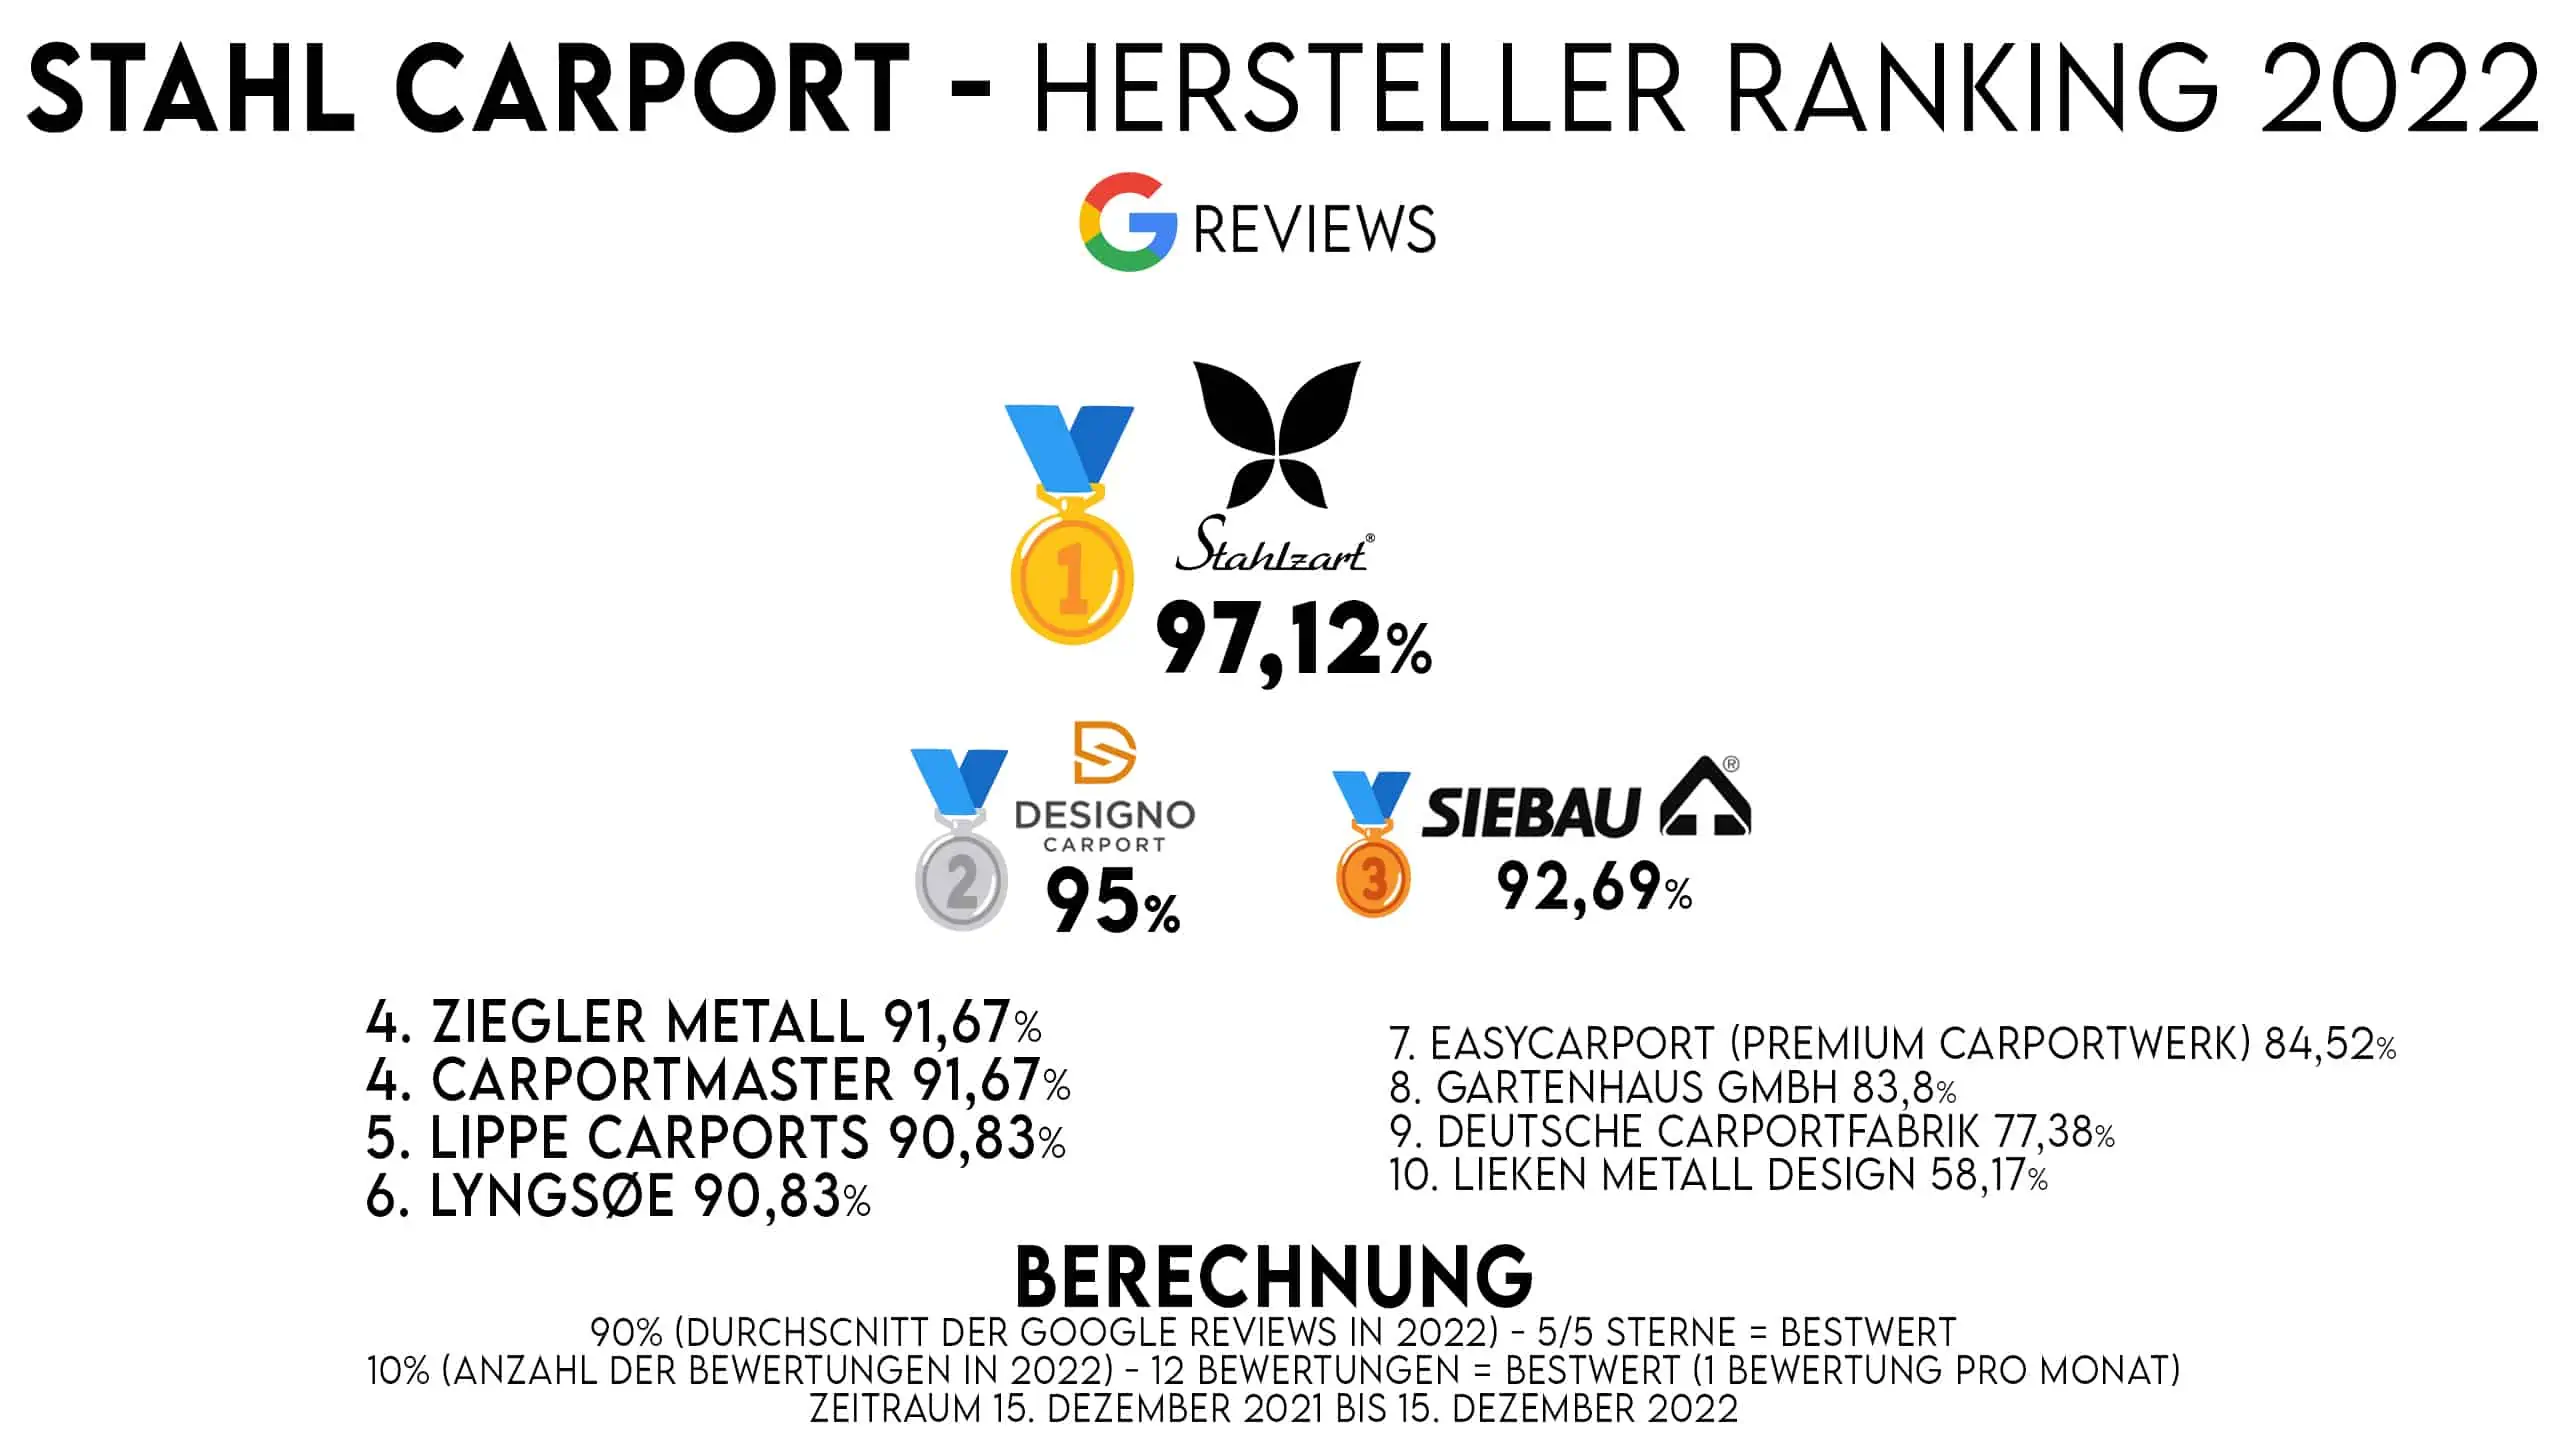 stahl-carport-ranking-2022-top-hersteller-die-besten-stahl-carports-in-deutschland-google-reviews-nr-1-stahlzart-97.12-prozent-nr-2-designo-carport-95-prozent-nr-3-siebau-92.69-prozent